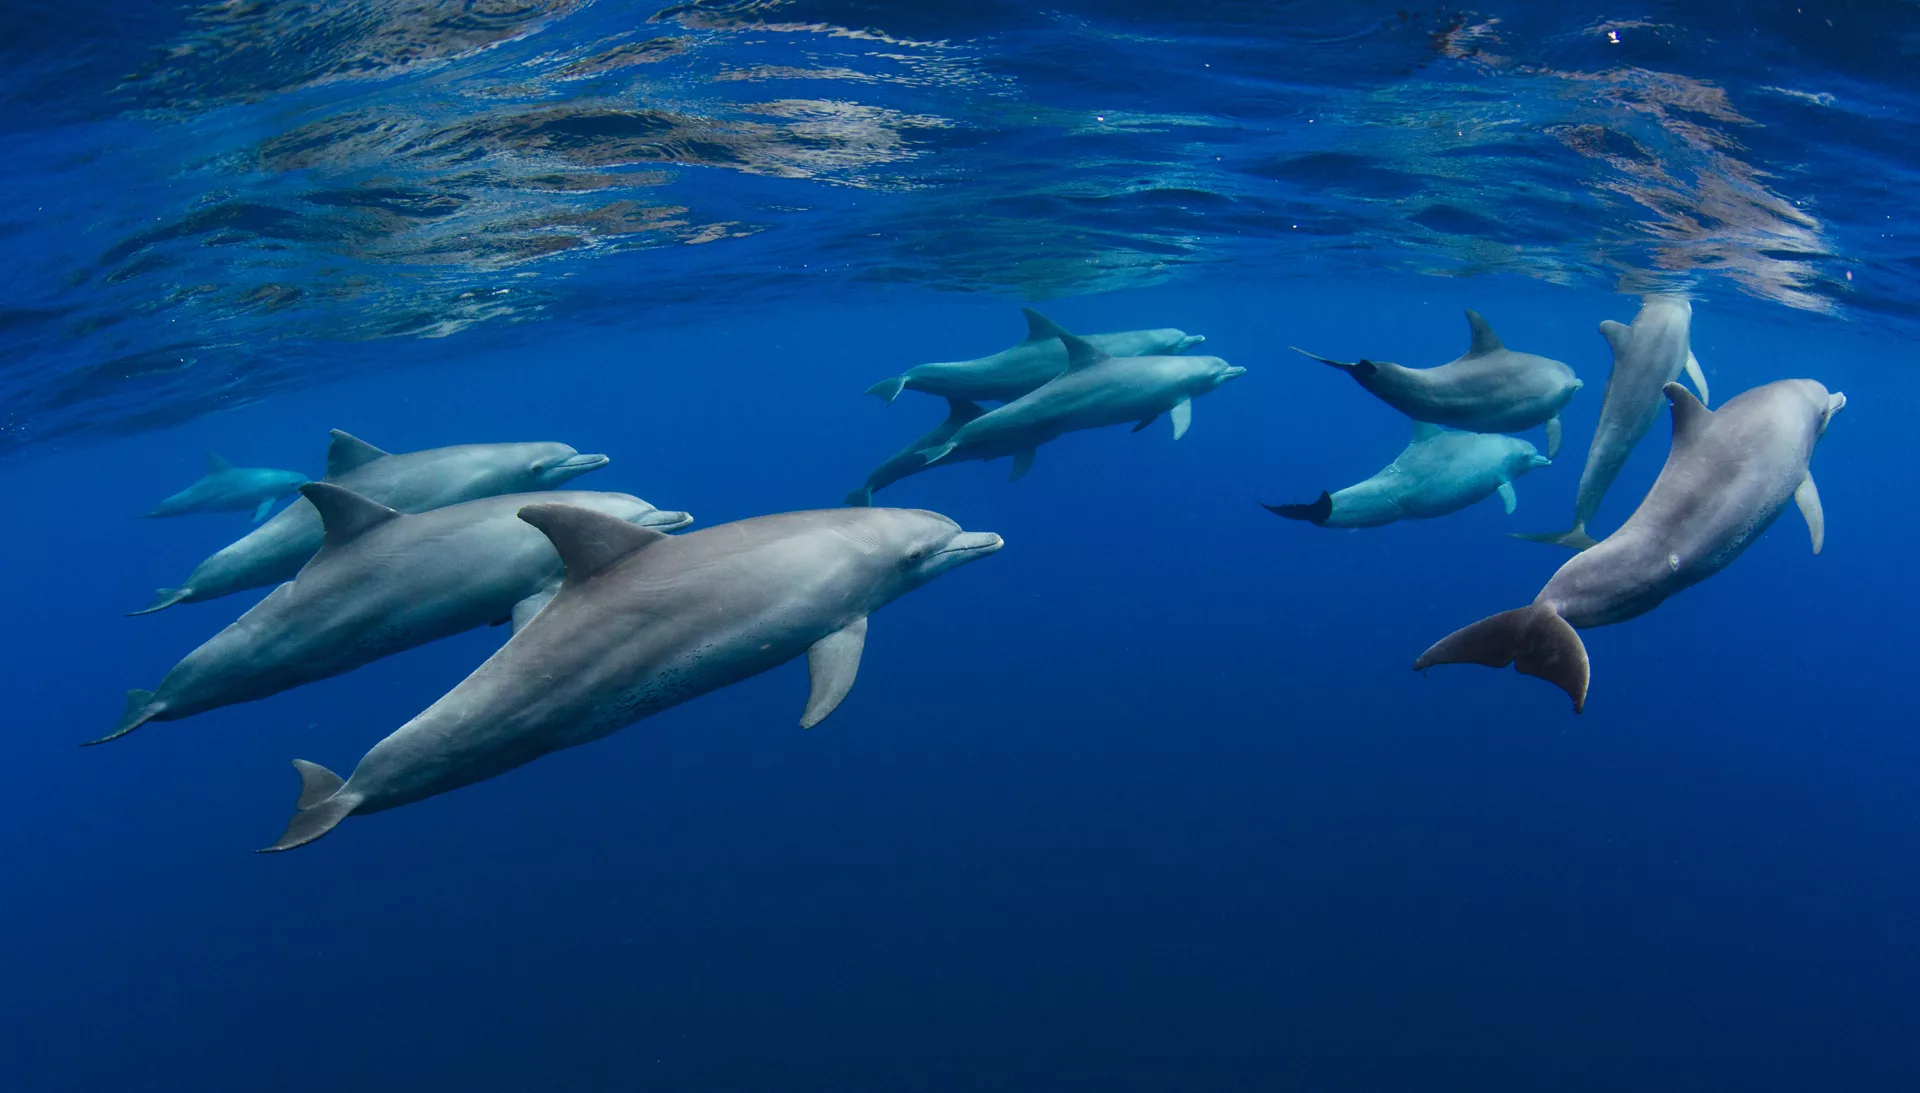 Frankrijk neemt drastische maatregel om dolfijnen te redden: tijdelijk visserijverbod